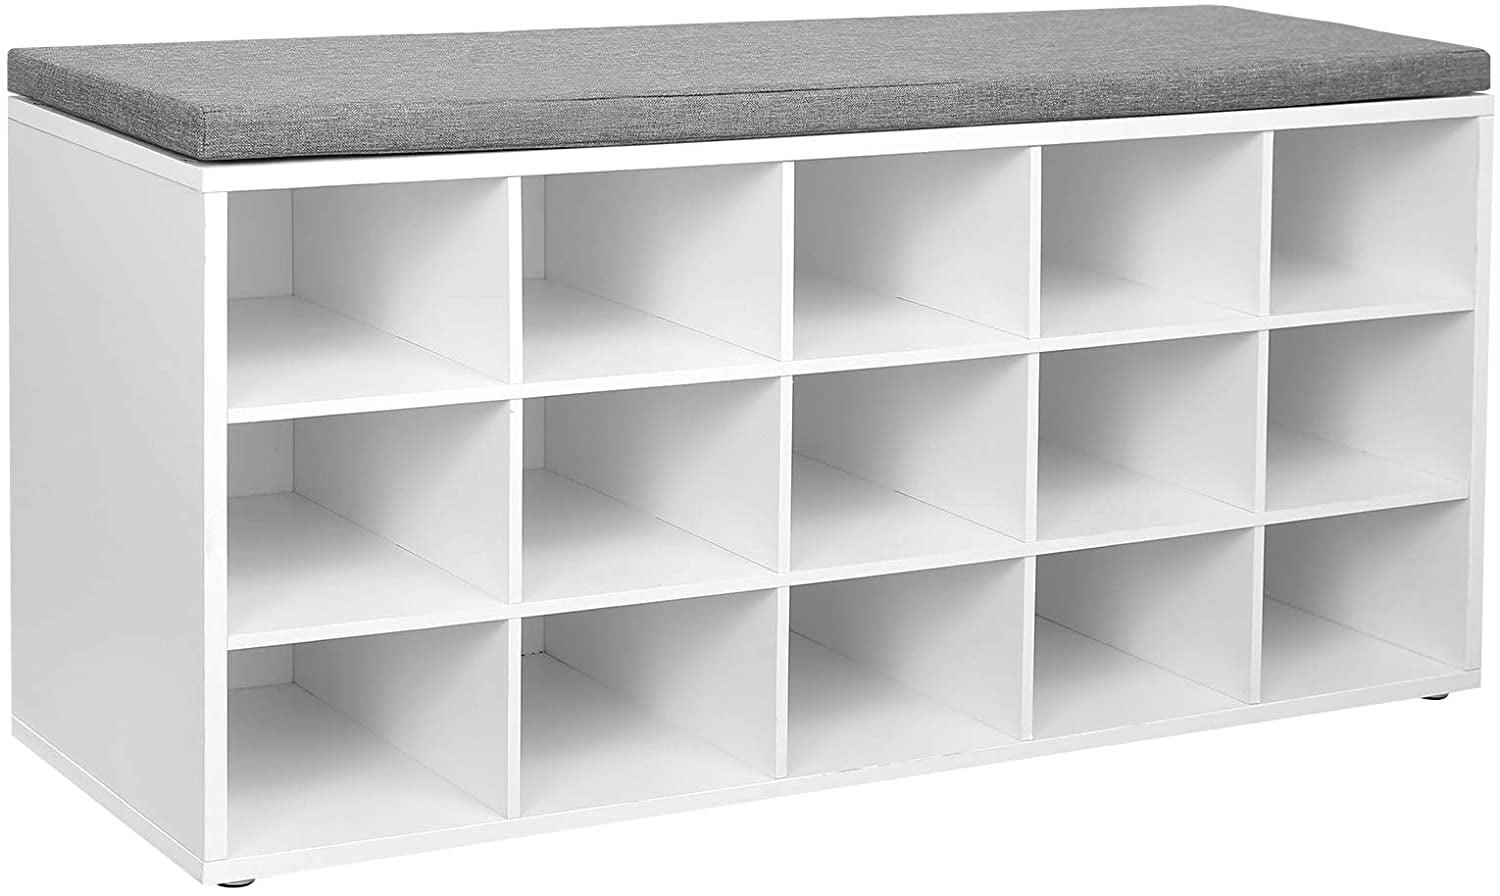  ClosetMaid Modular Storage Angled Shelves, Wood Closet Organizer  Adjustable, Stacking, Full Backer, Decorative Trim, White, Shoe Shelf Unit  : Everything Else